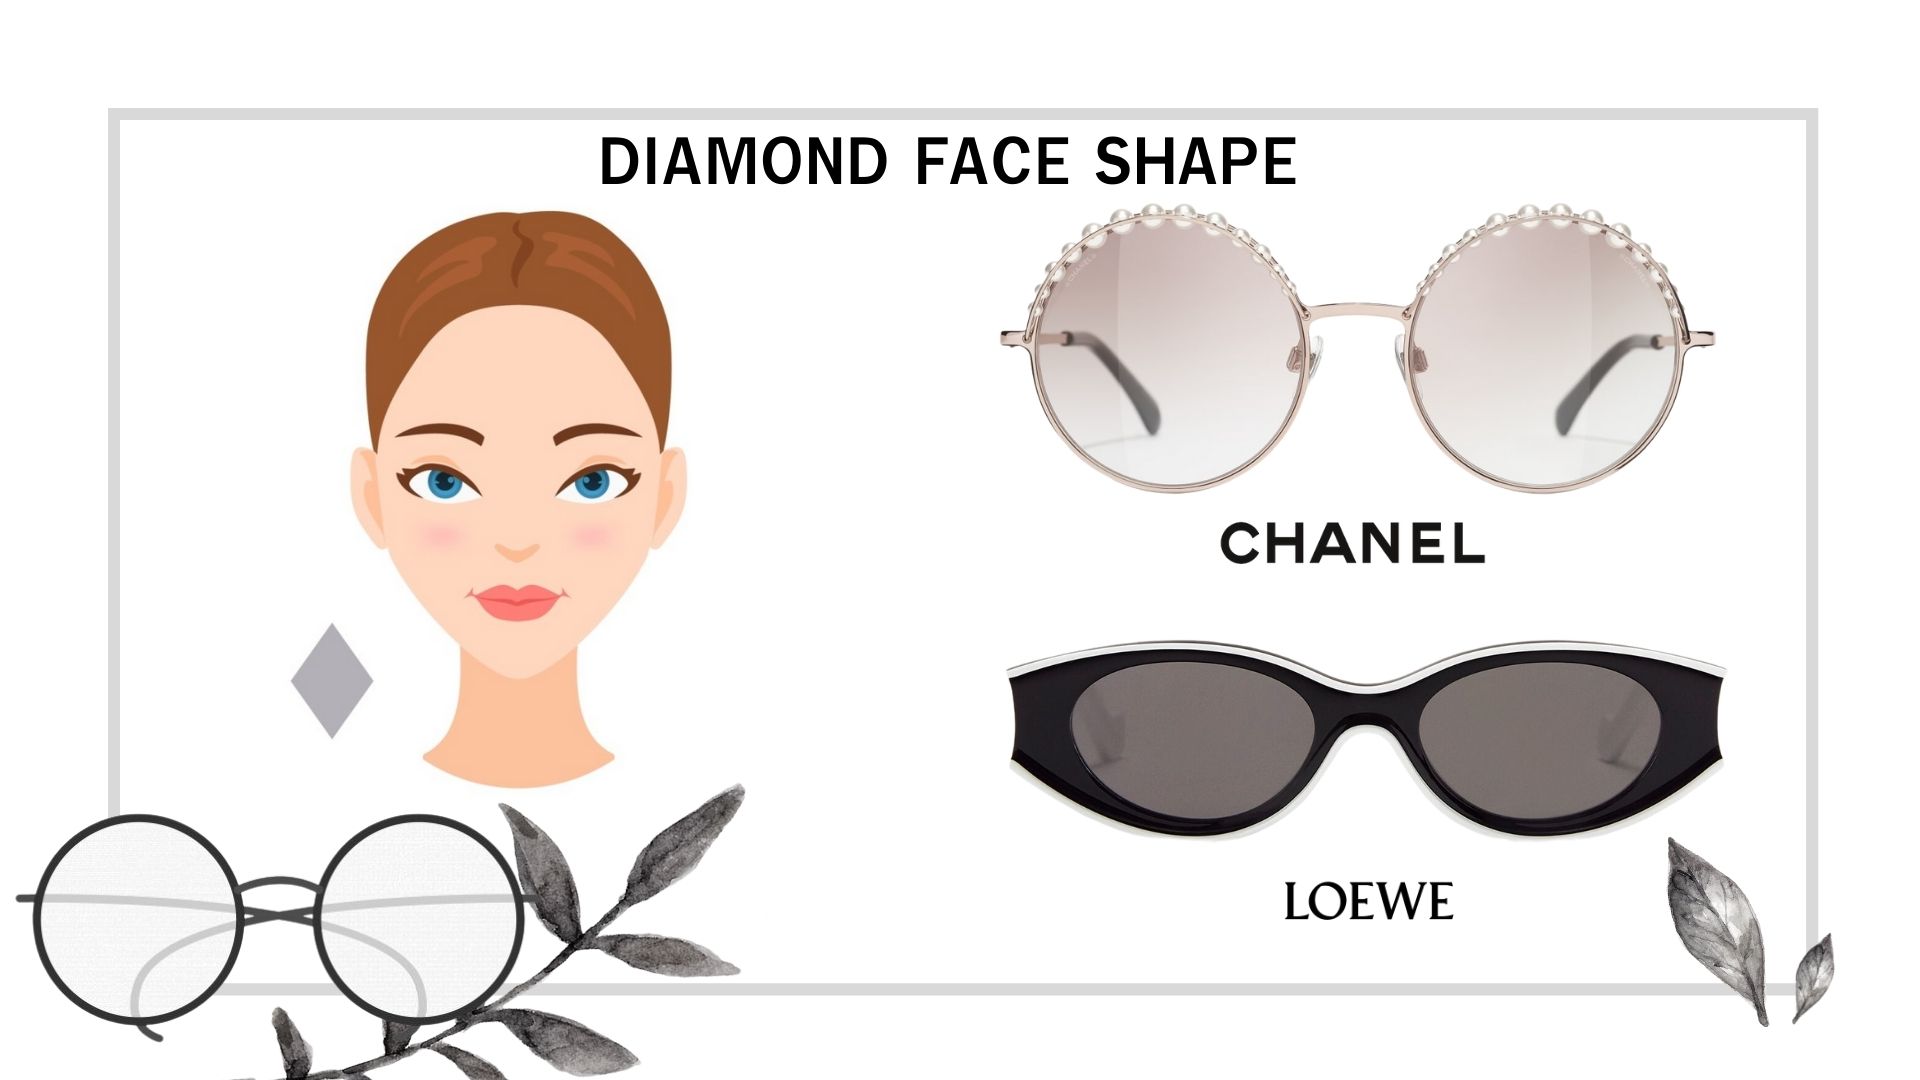 วิธีเลือกแว่นกันแดดให้เข้ากับรูปหน้า สวยได้แม้ยังใส่แว่นอยู่ - Kate💋 Style